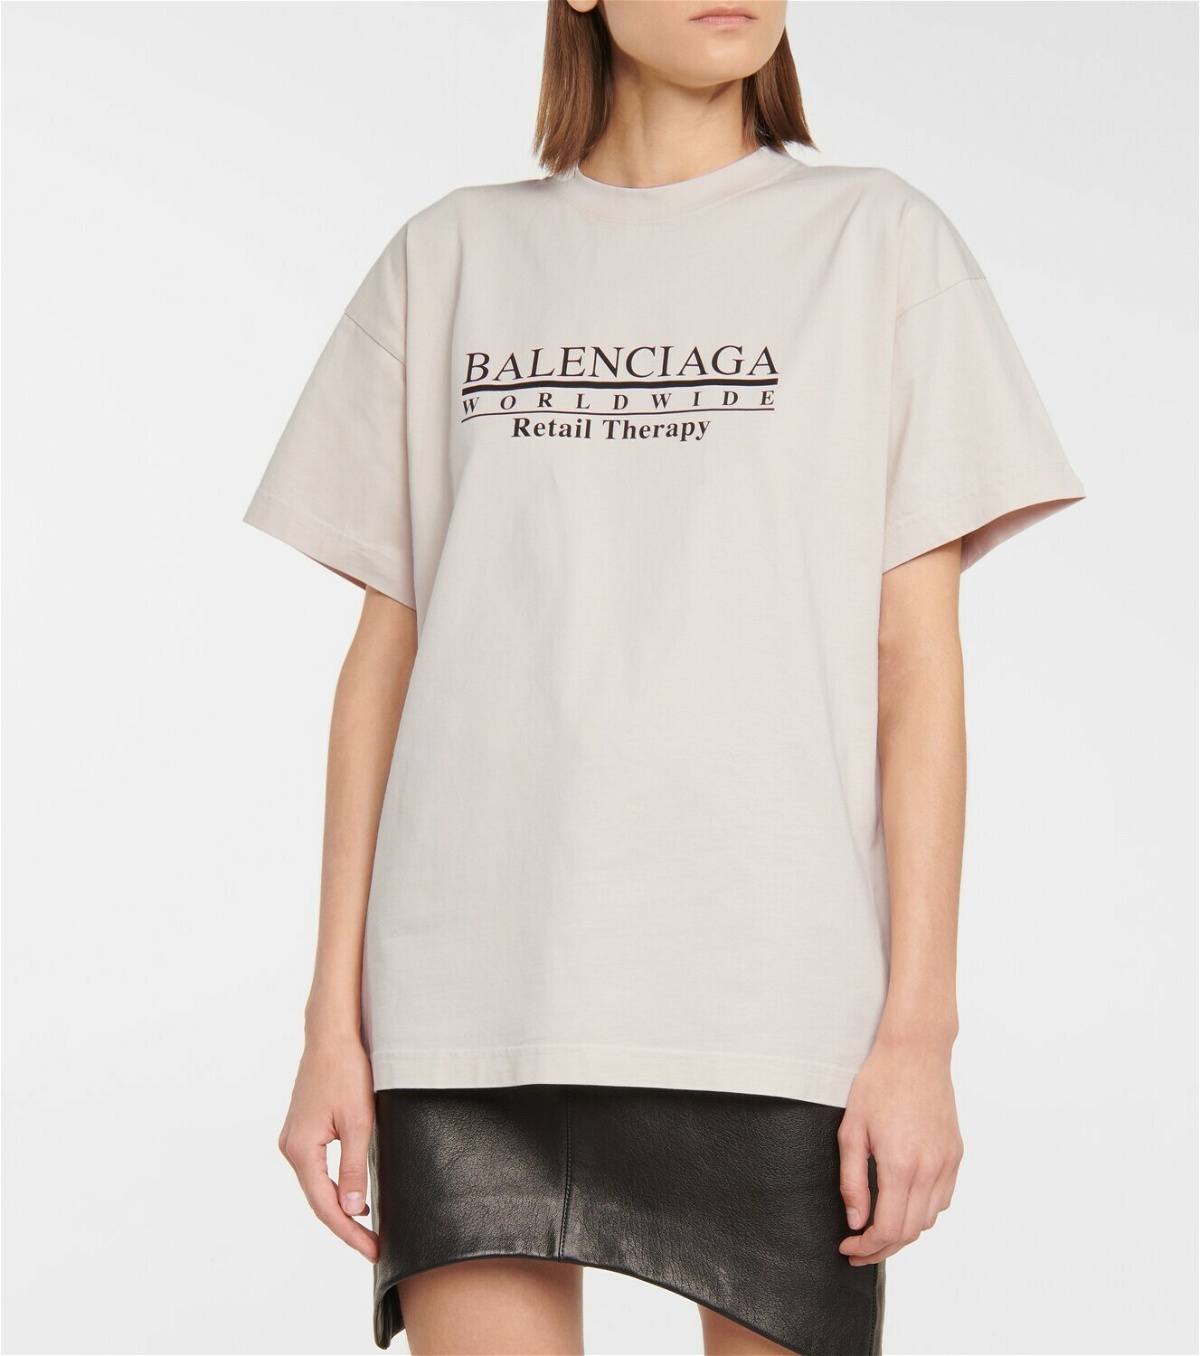 Balenciaga - Retail Therapy cotton jersey T-shirt Balenciaga